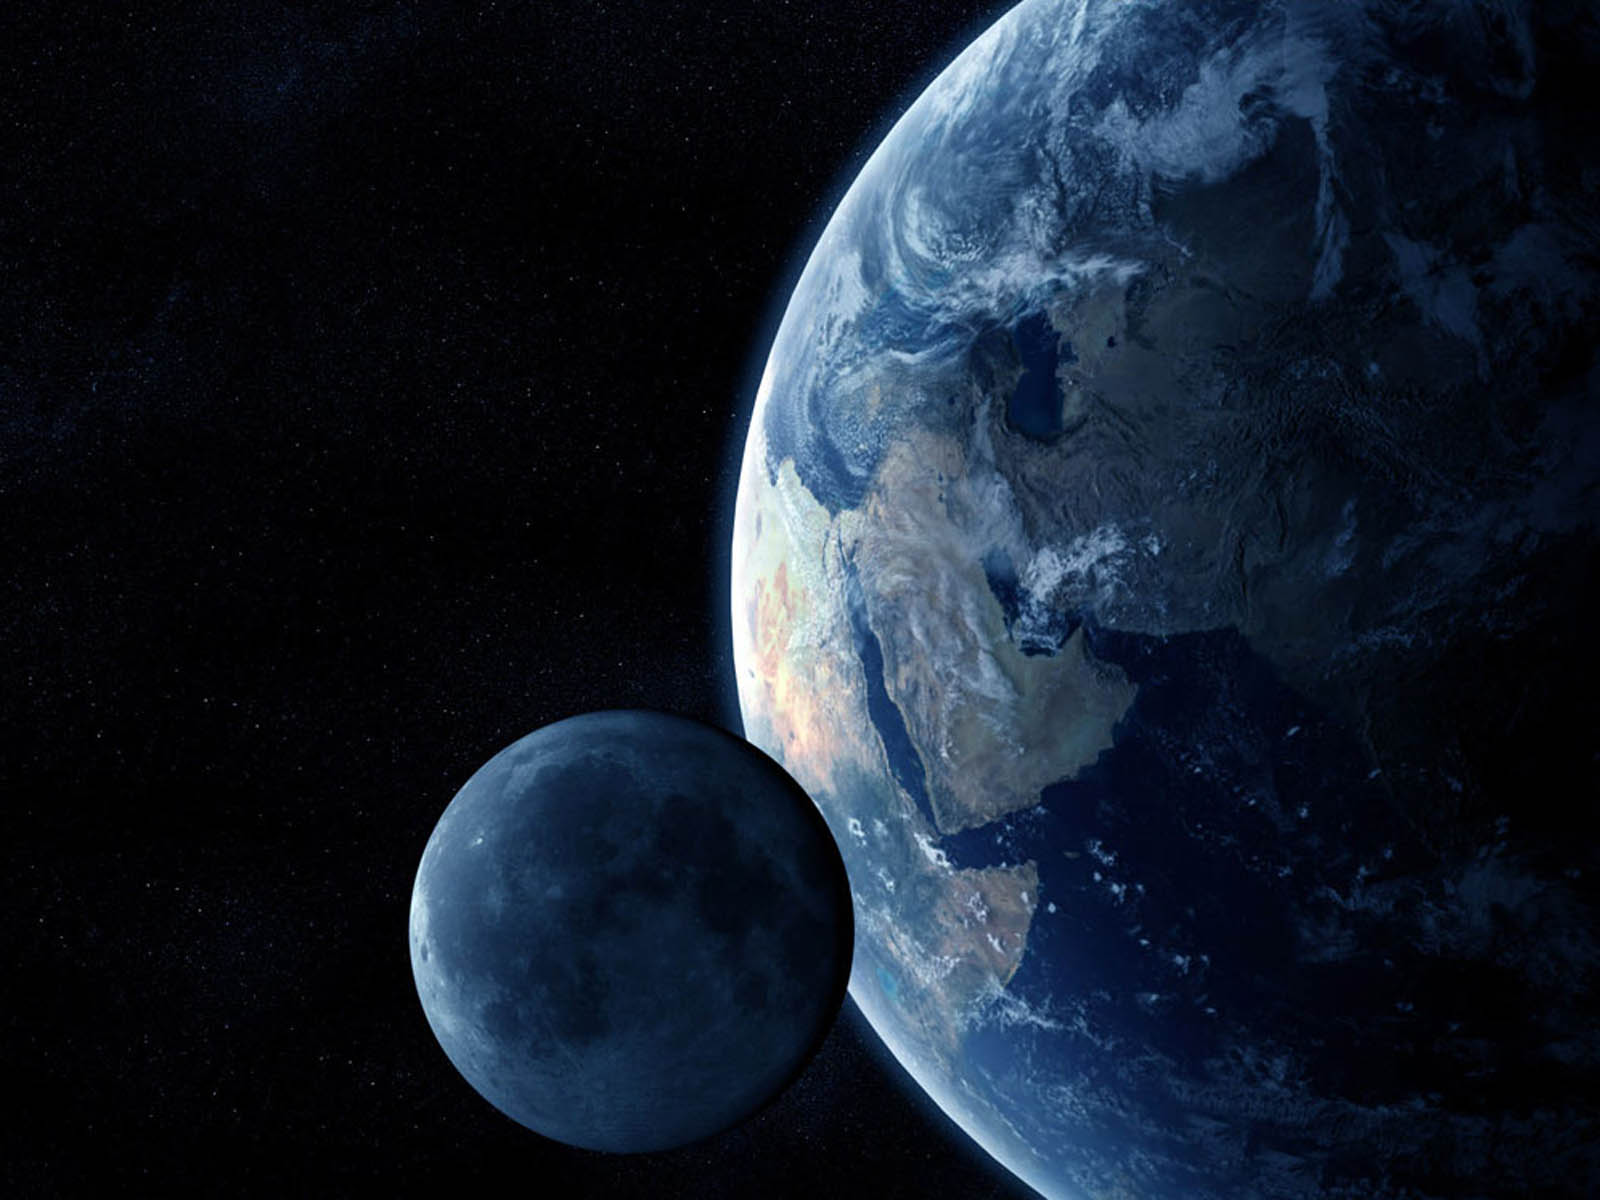 fond d'écran de la terre,cosmos,lune,planète,atmosphère,objet astronomique